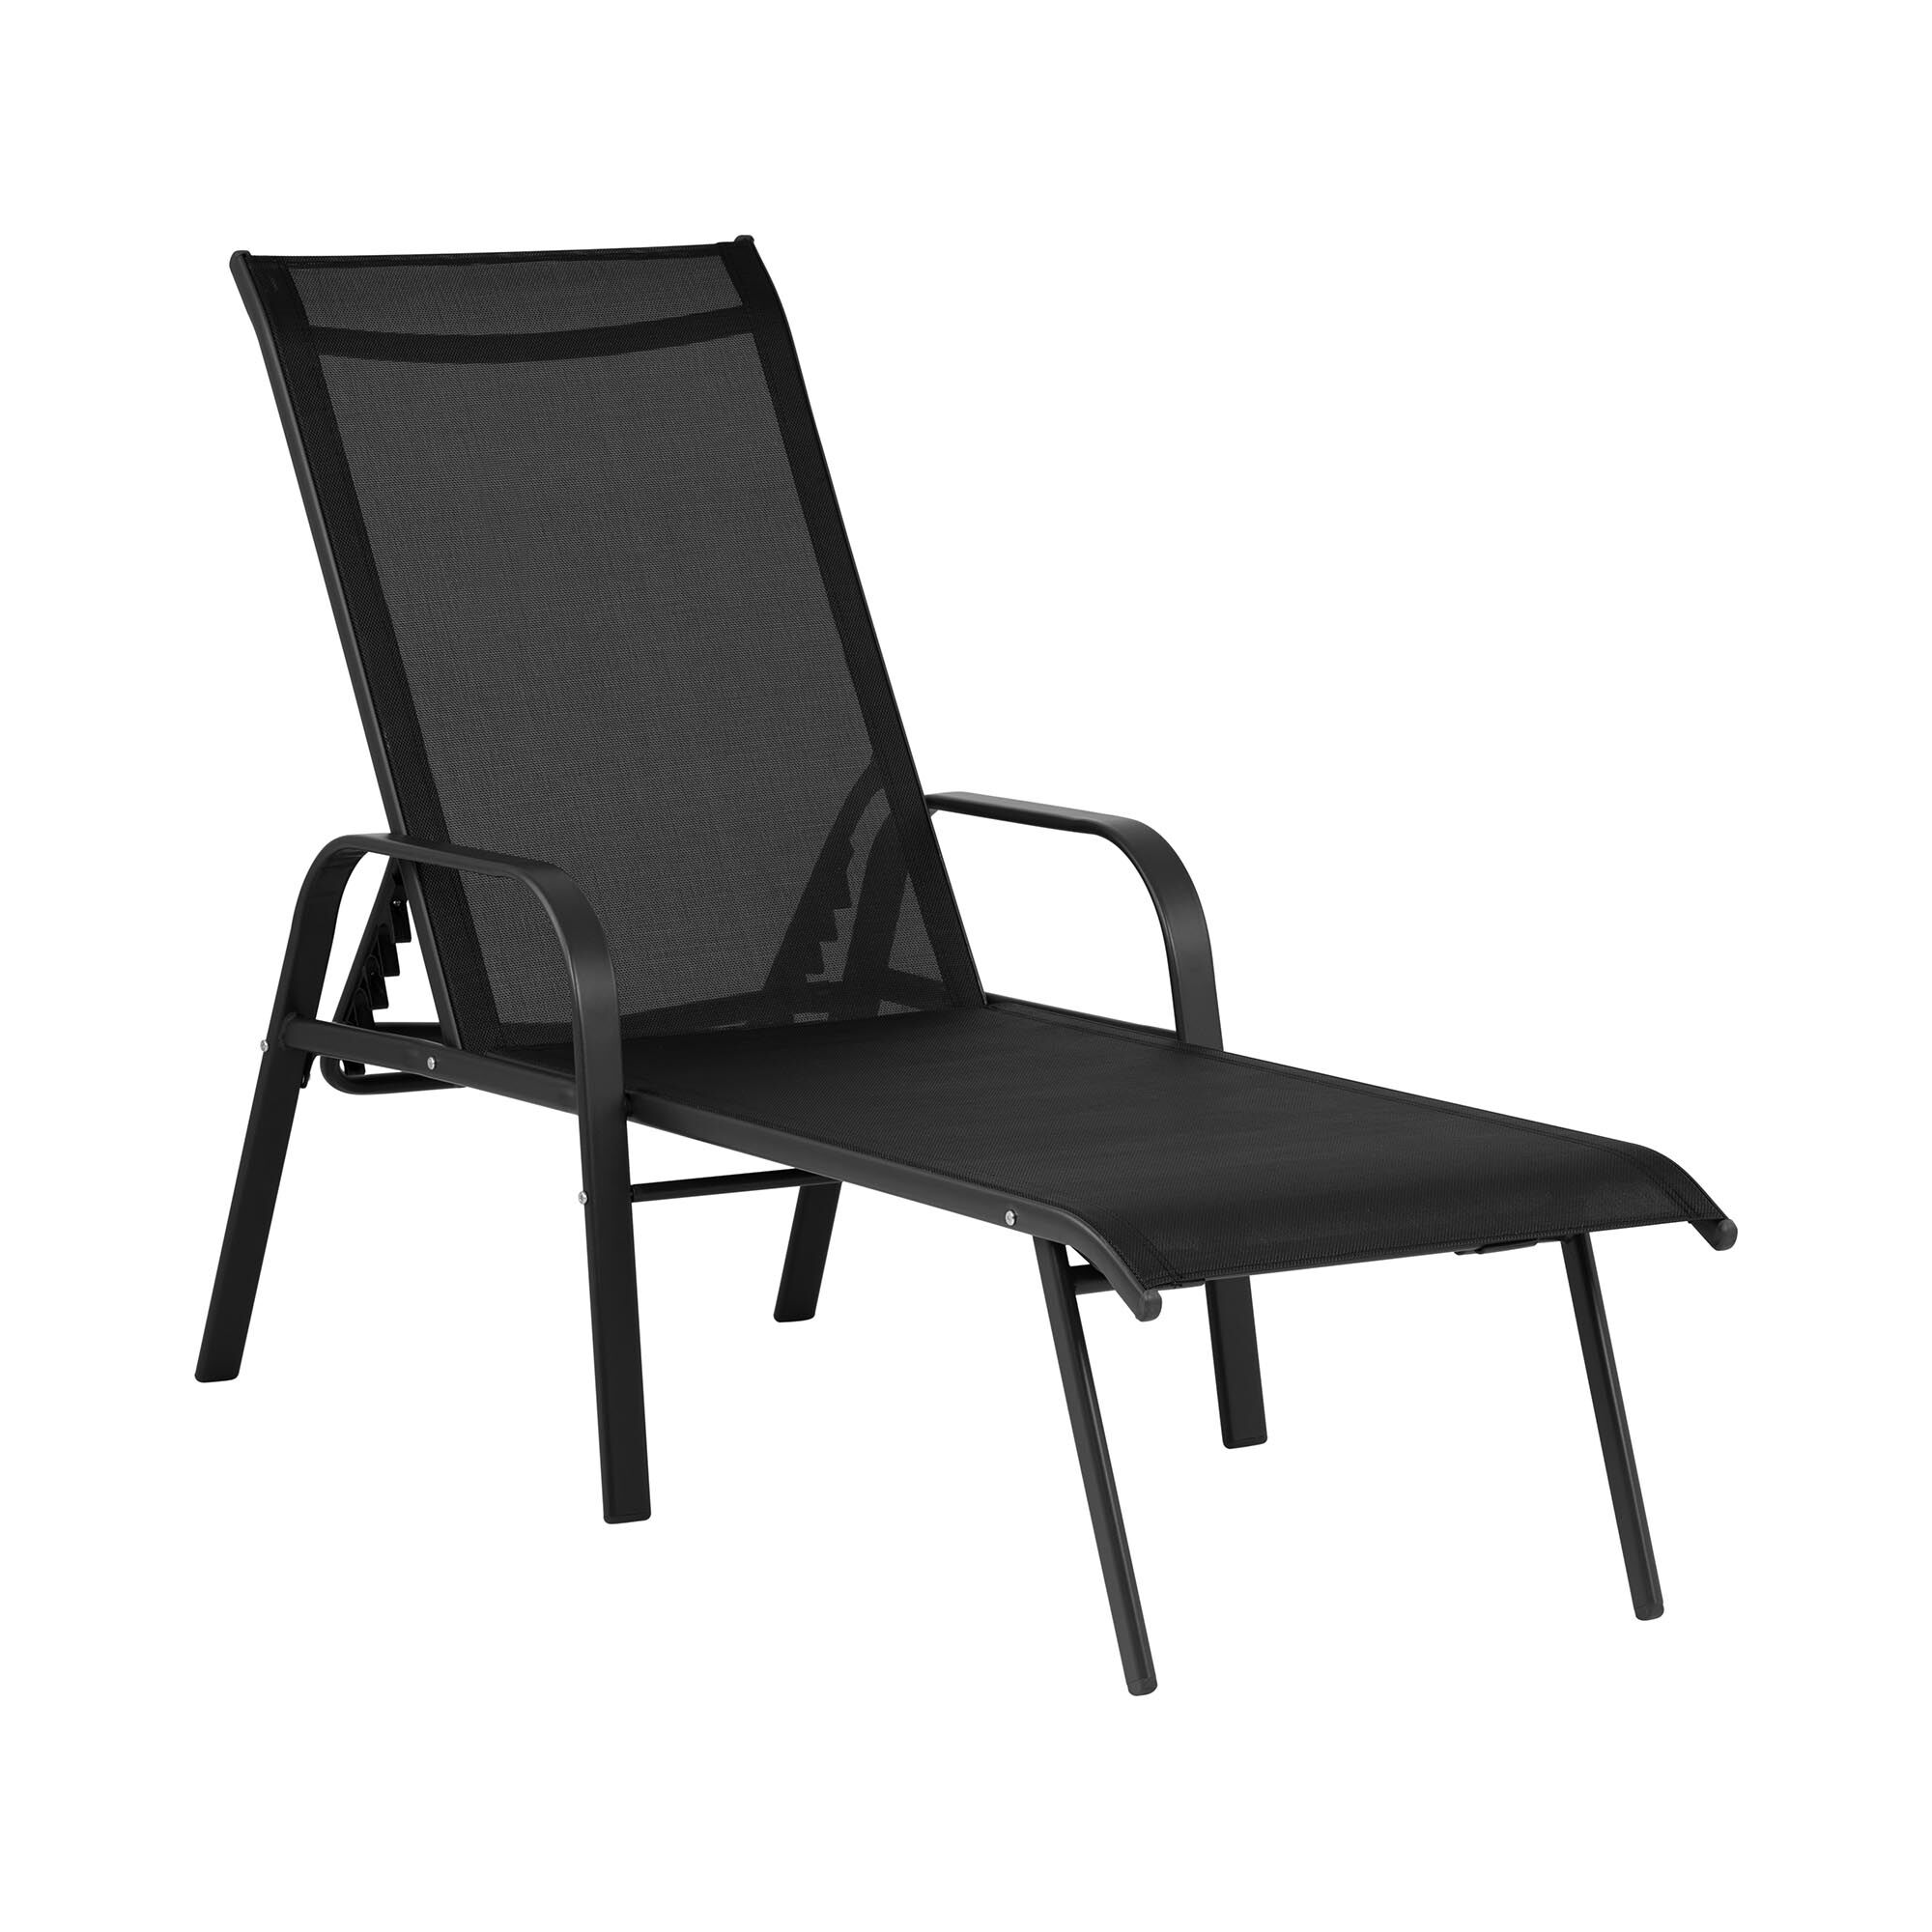 Uniprodo Sunbed - black - steel frame - adjustable backrest